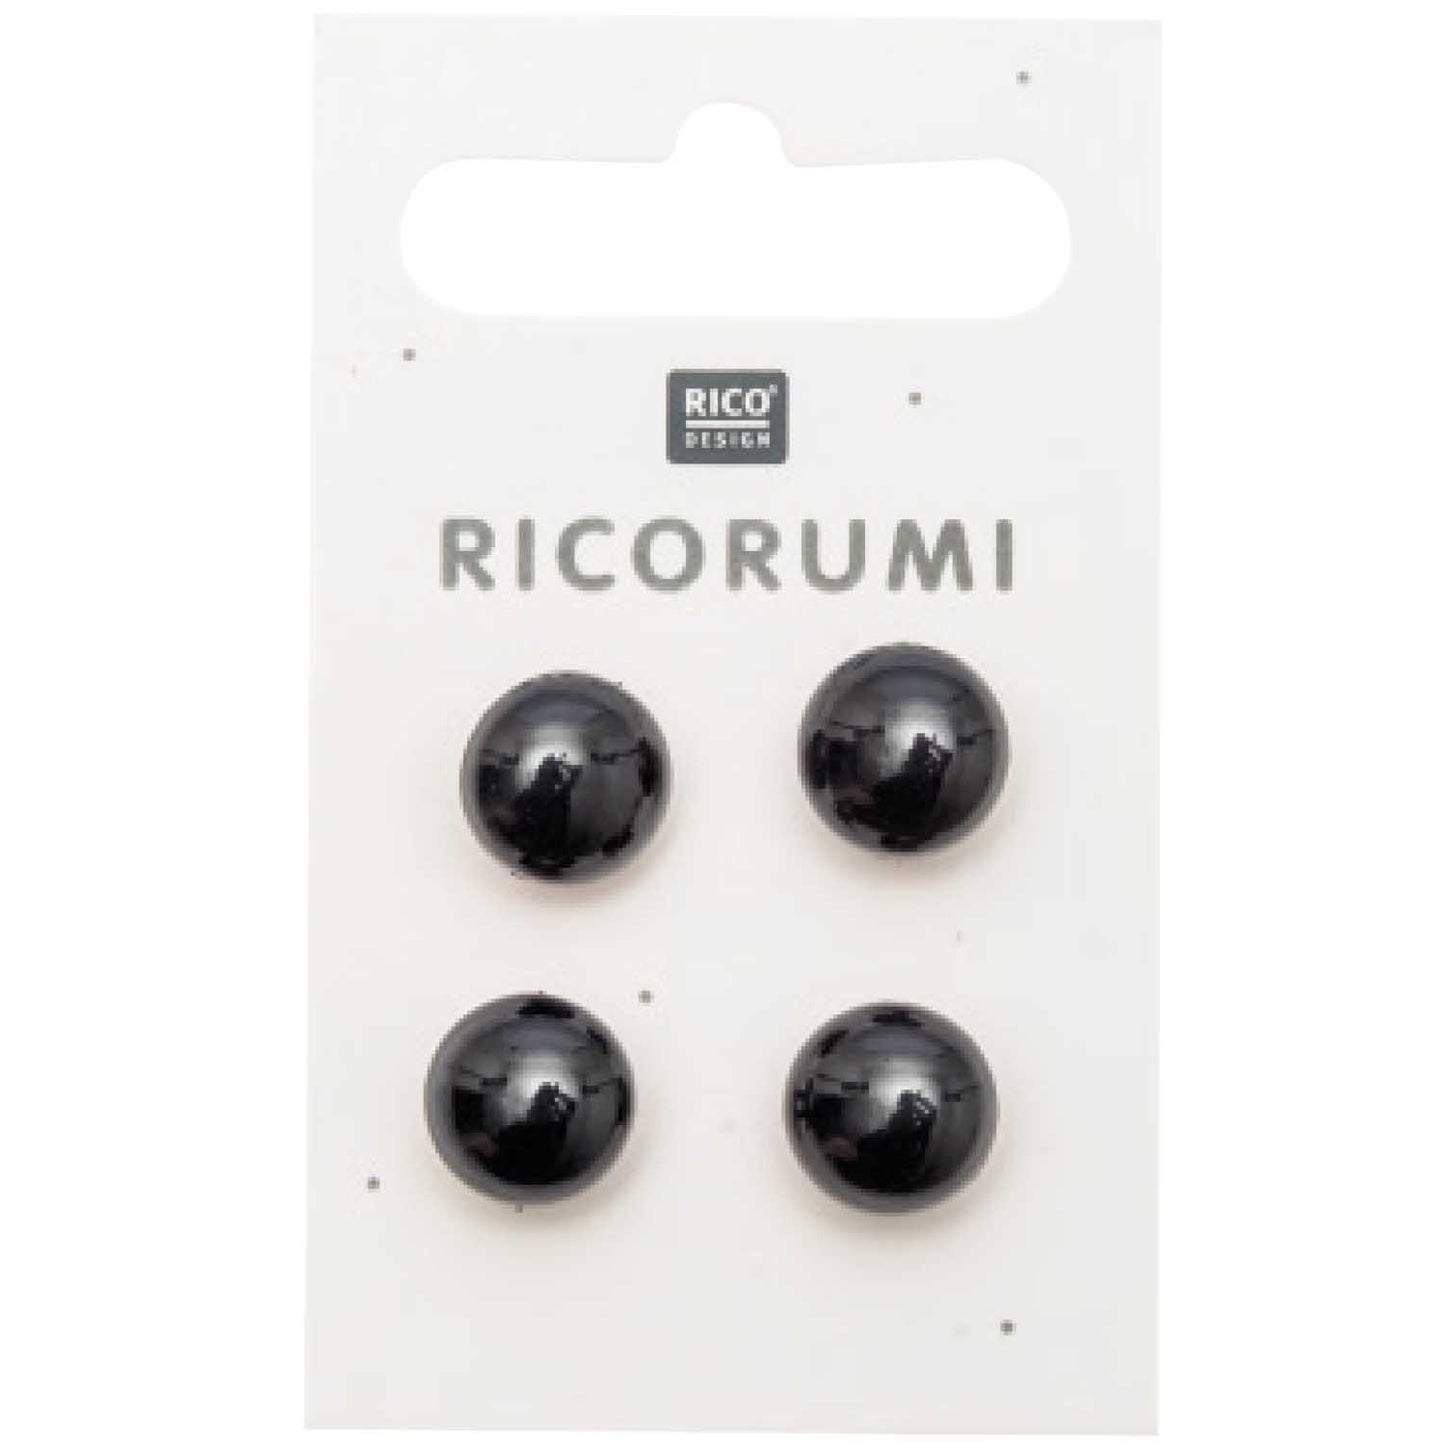 Rico Design - Ricorumi Button eyes 11mm